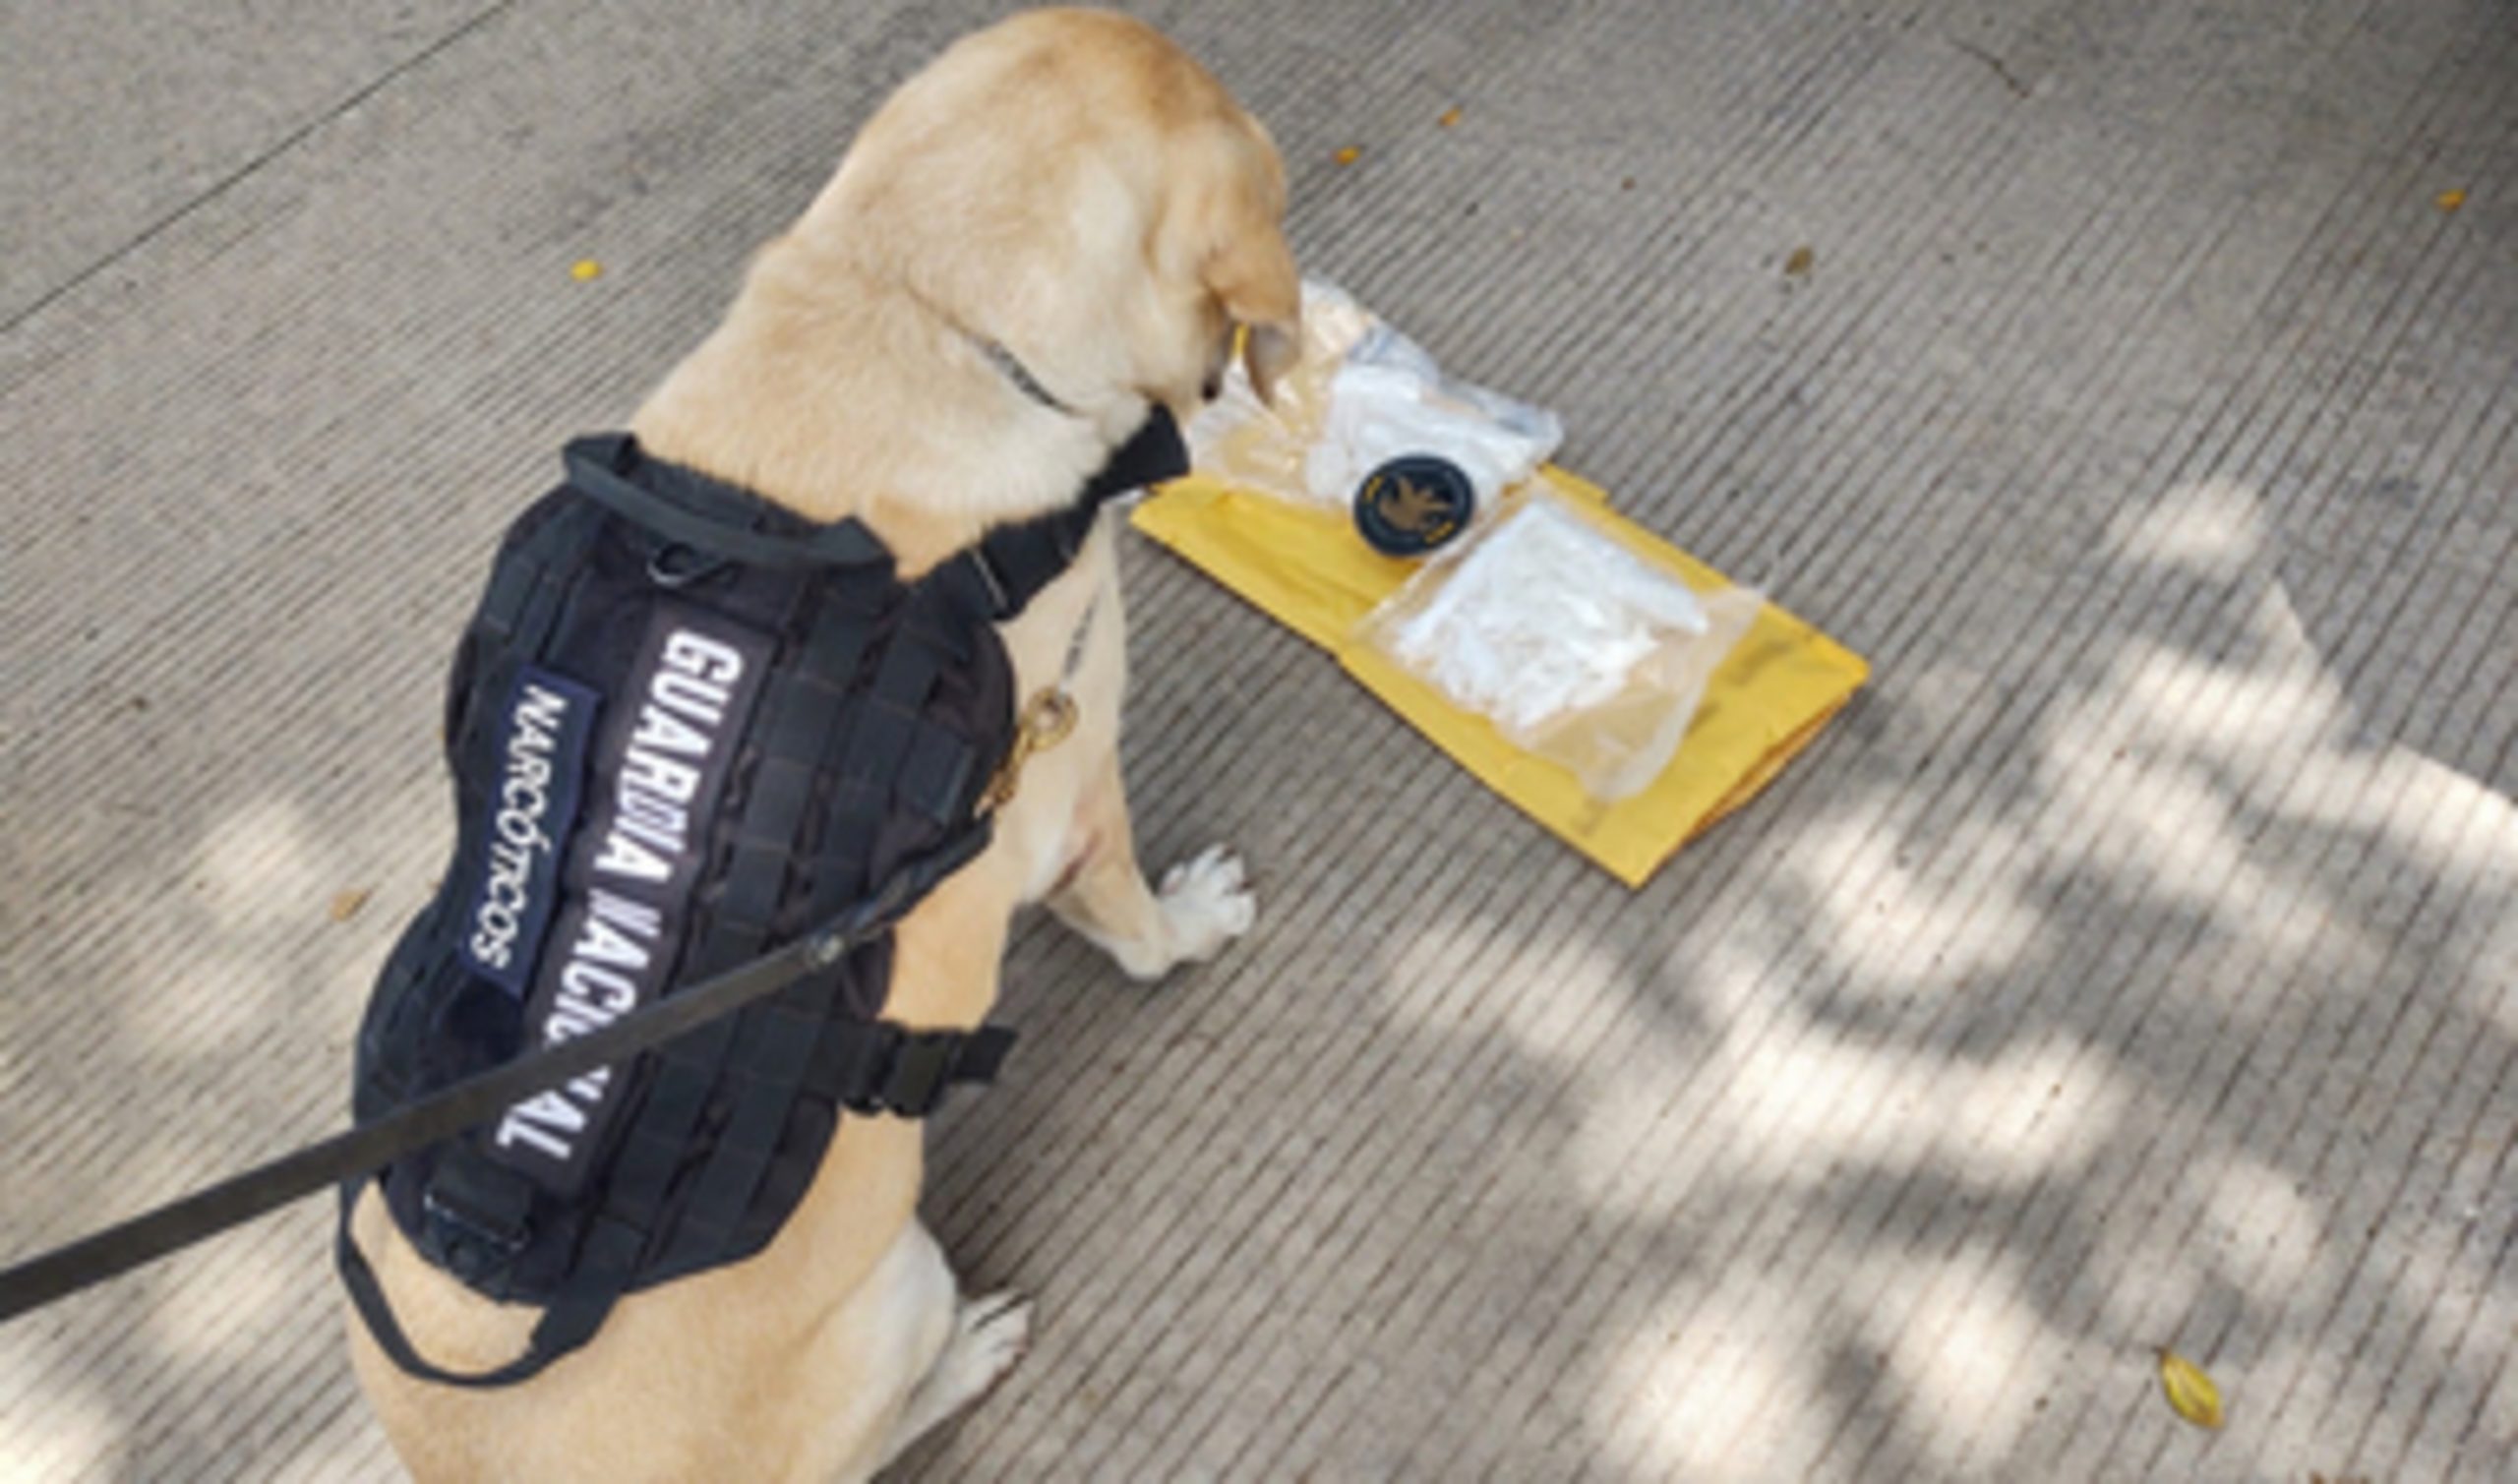 Binomios caninos rastrean envío con aparente metanfetamina en una empresa de paquetería en Culiacán